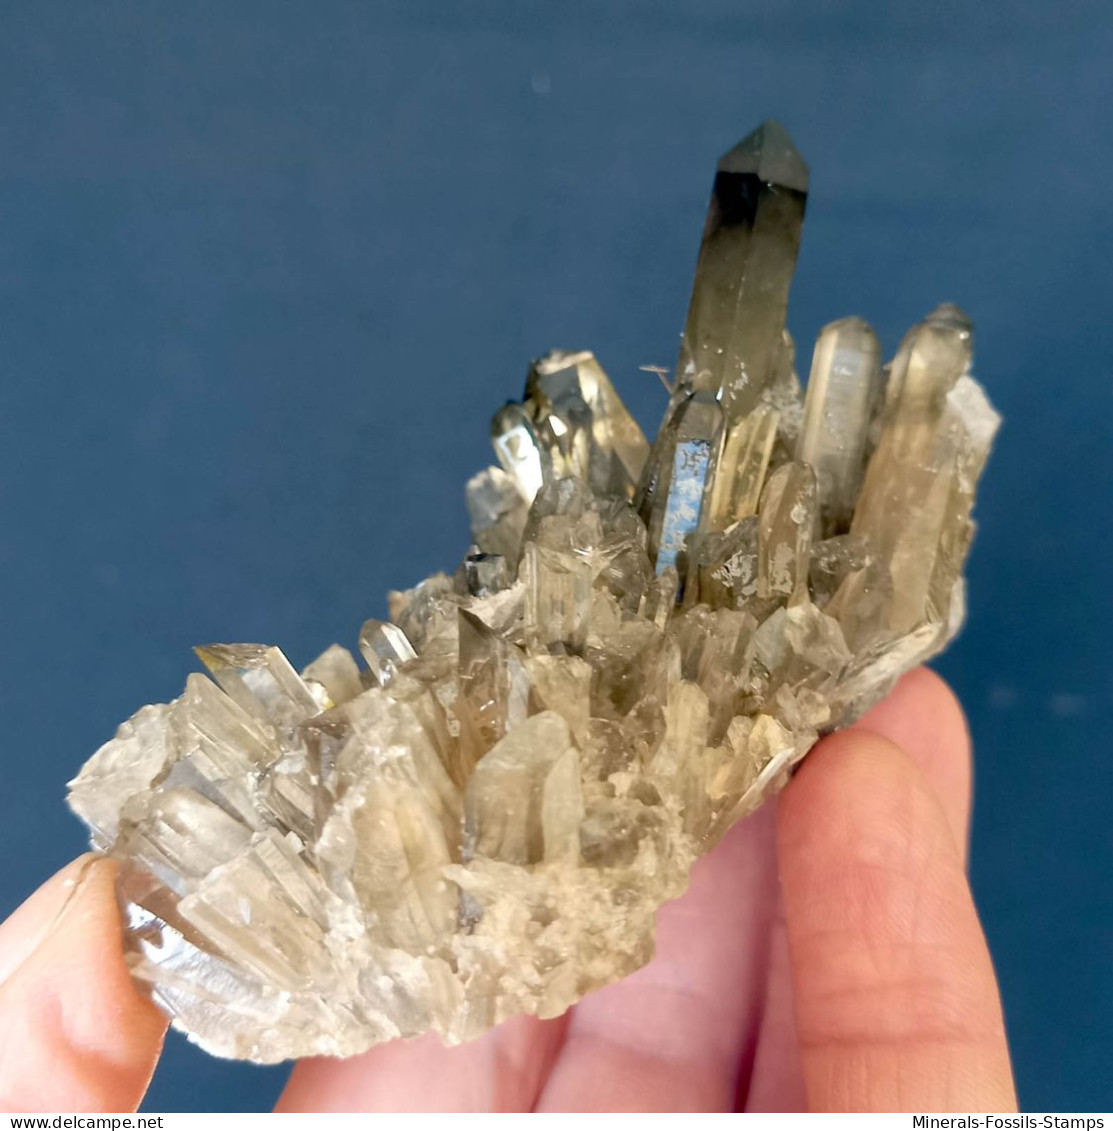 #07 – SCHÖNE MORIONE QUARZ Kristalle (Kara-Oba, Moiynkum, Jambyl, Kasachstan) - Minerals